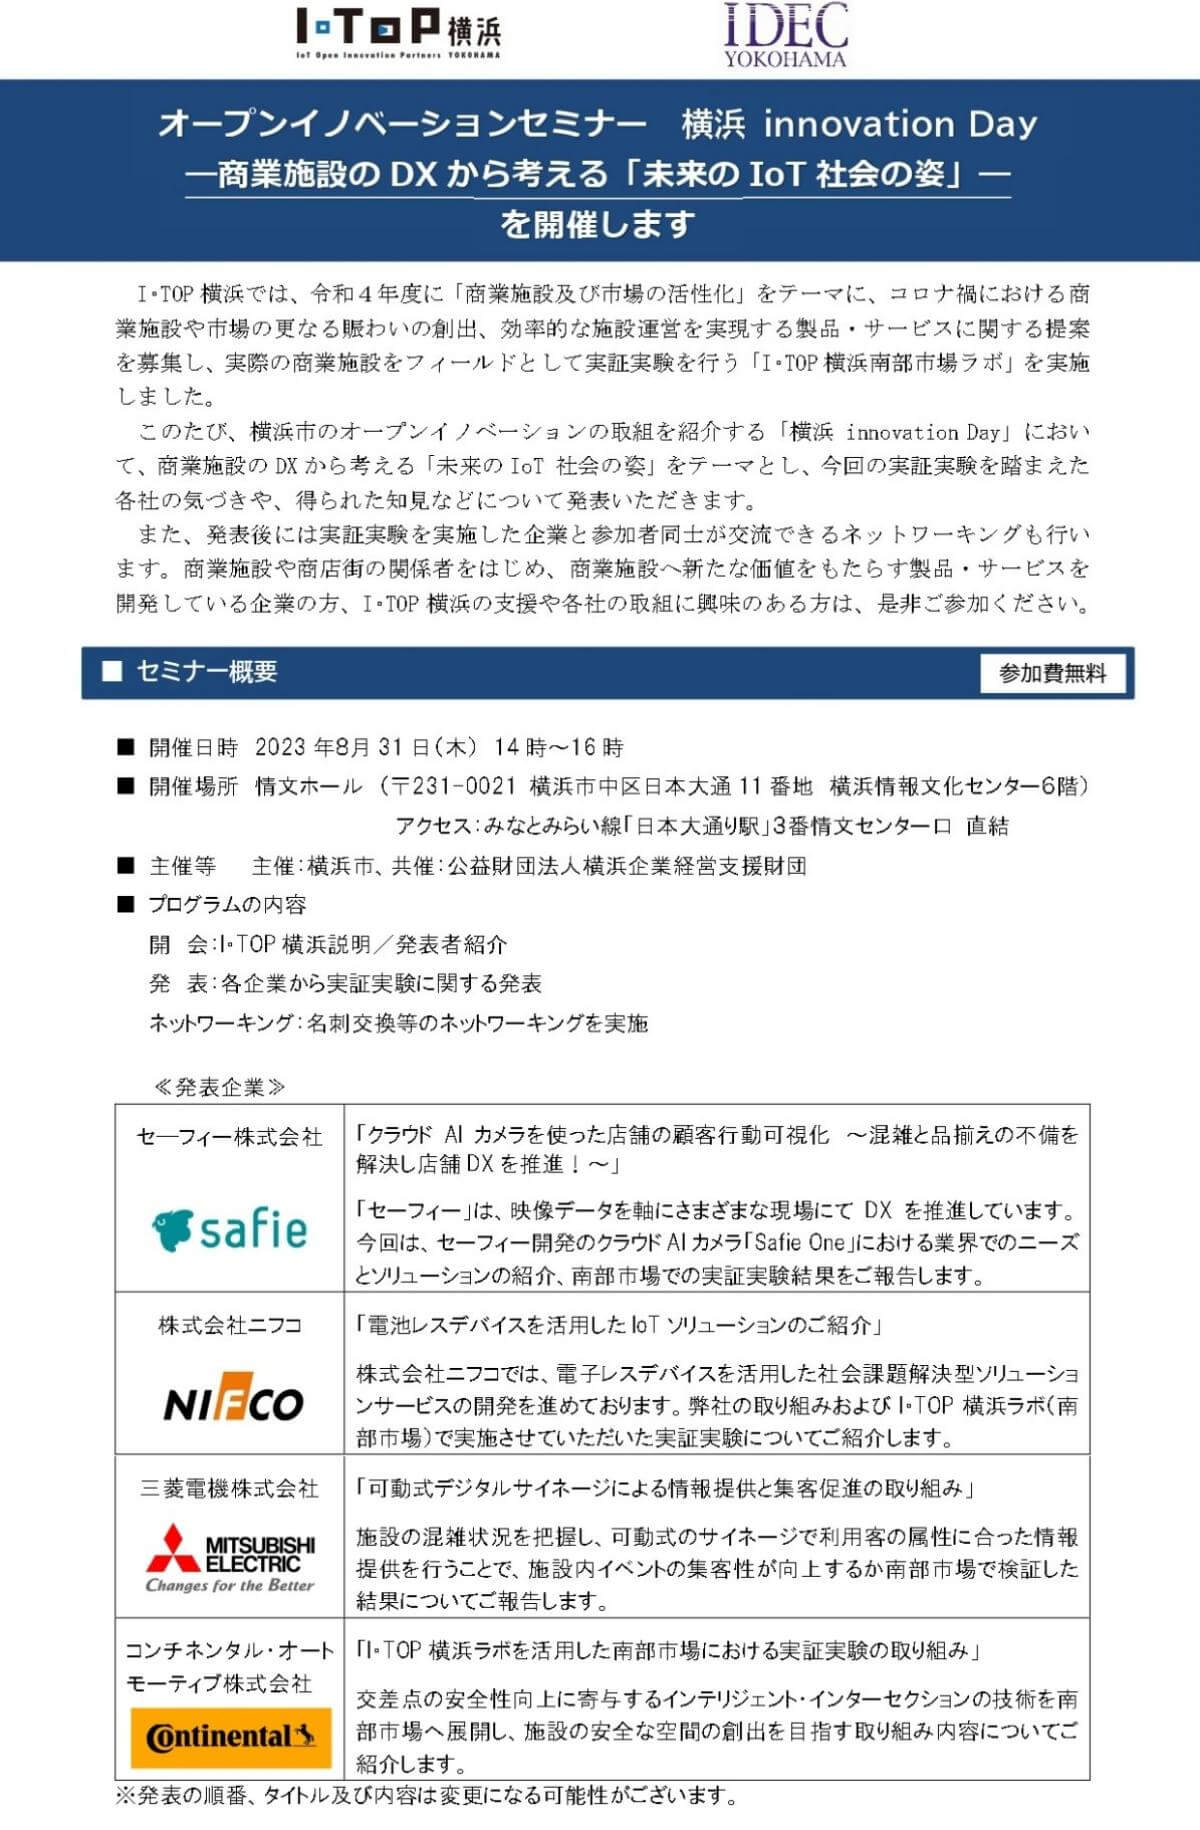 【8/31】オープンイノベーションセミナー「横浜 innovation Day」～商業施設のDXから考える「未来のIoT社会の姿」～